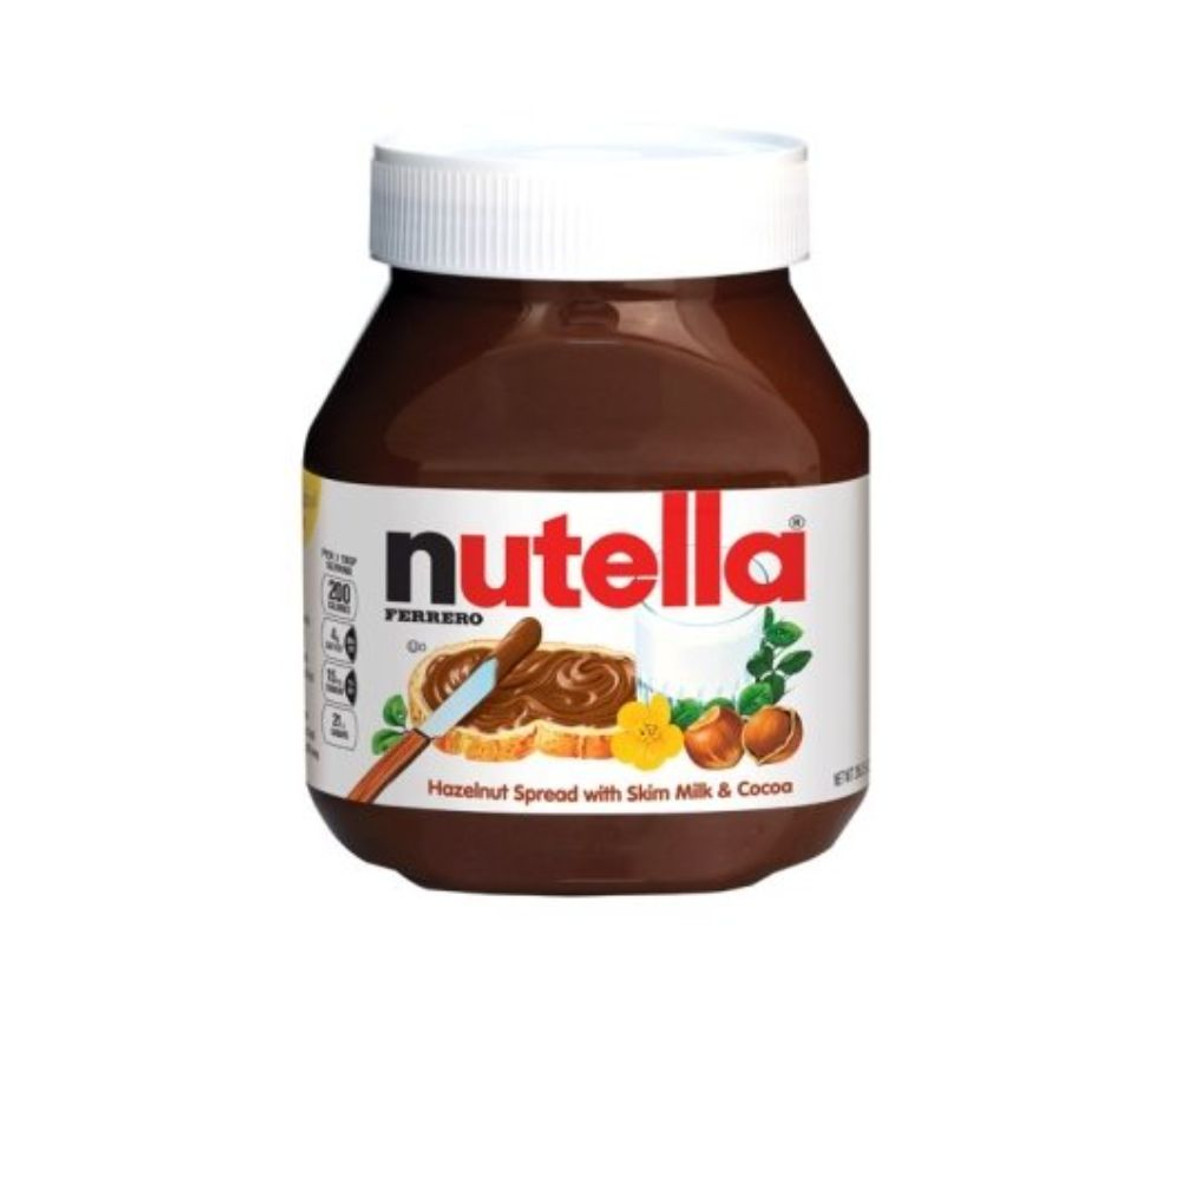 Nutella Chocolate Hazelnut Spread 26.5 Oz